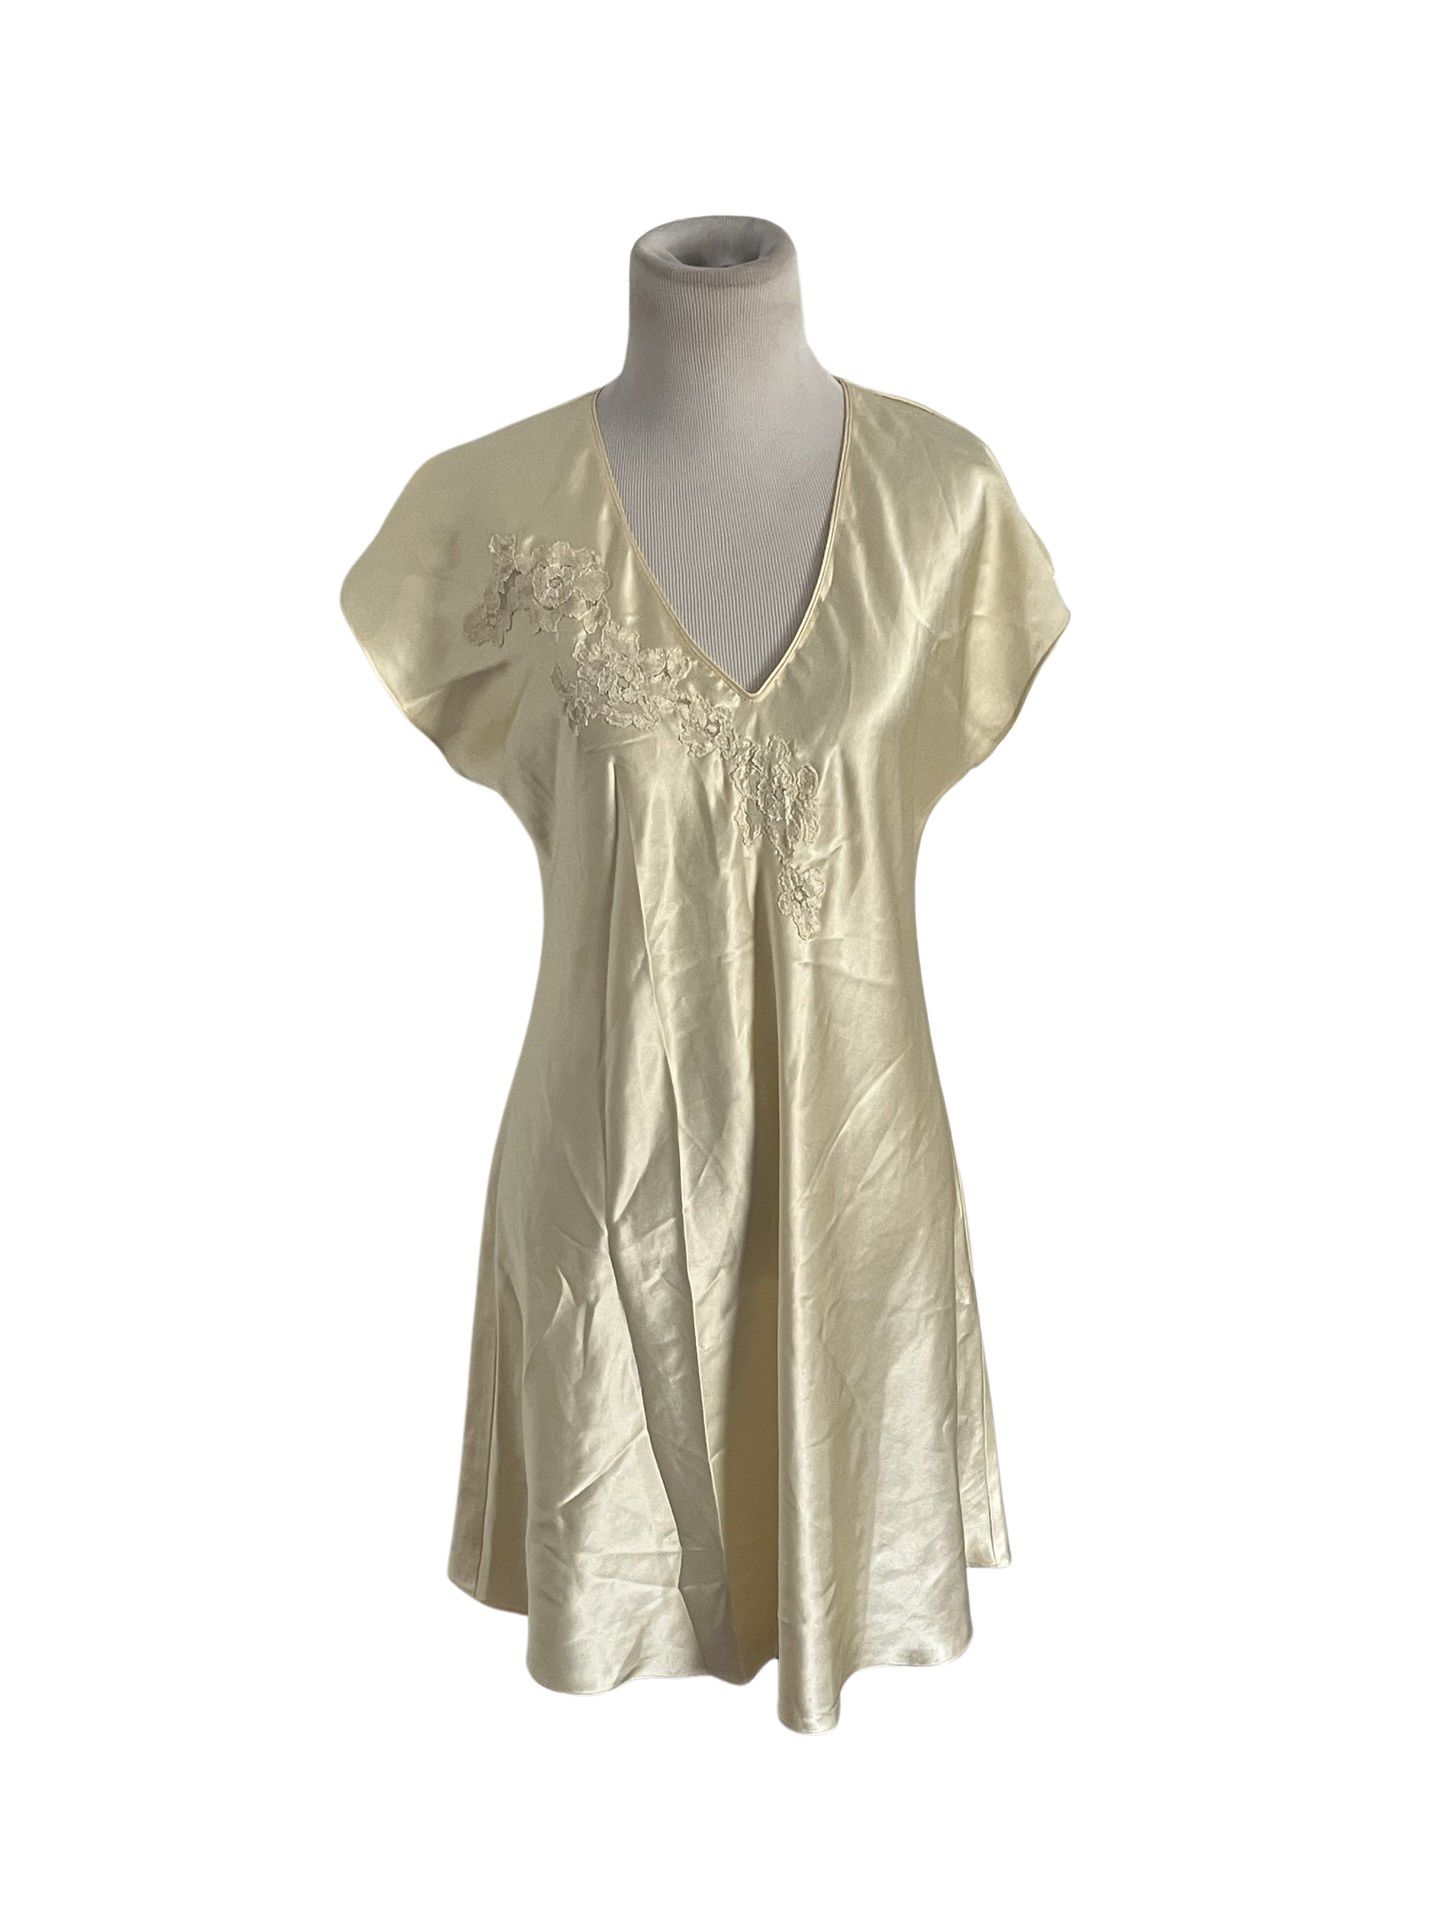 Vintage Oscar De Le Renta Yellow Lingerie Slip Dress Neiman Marcus Women’s Sz S